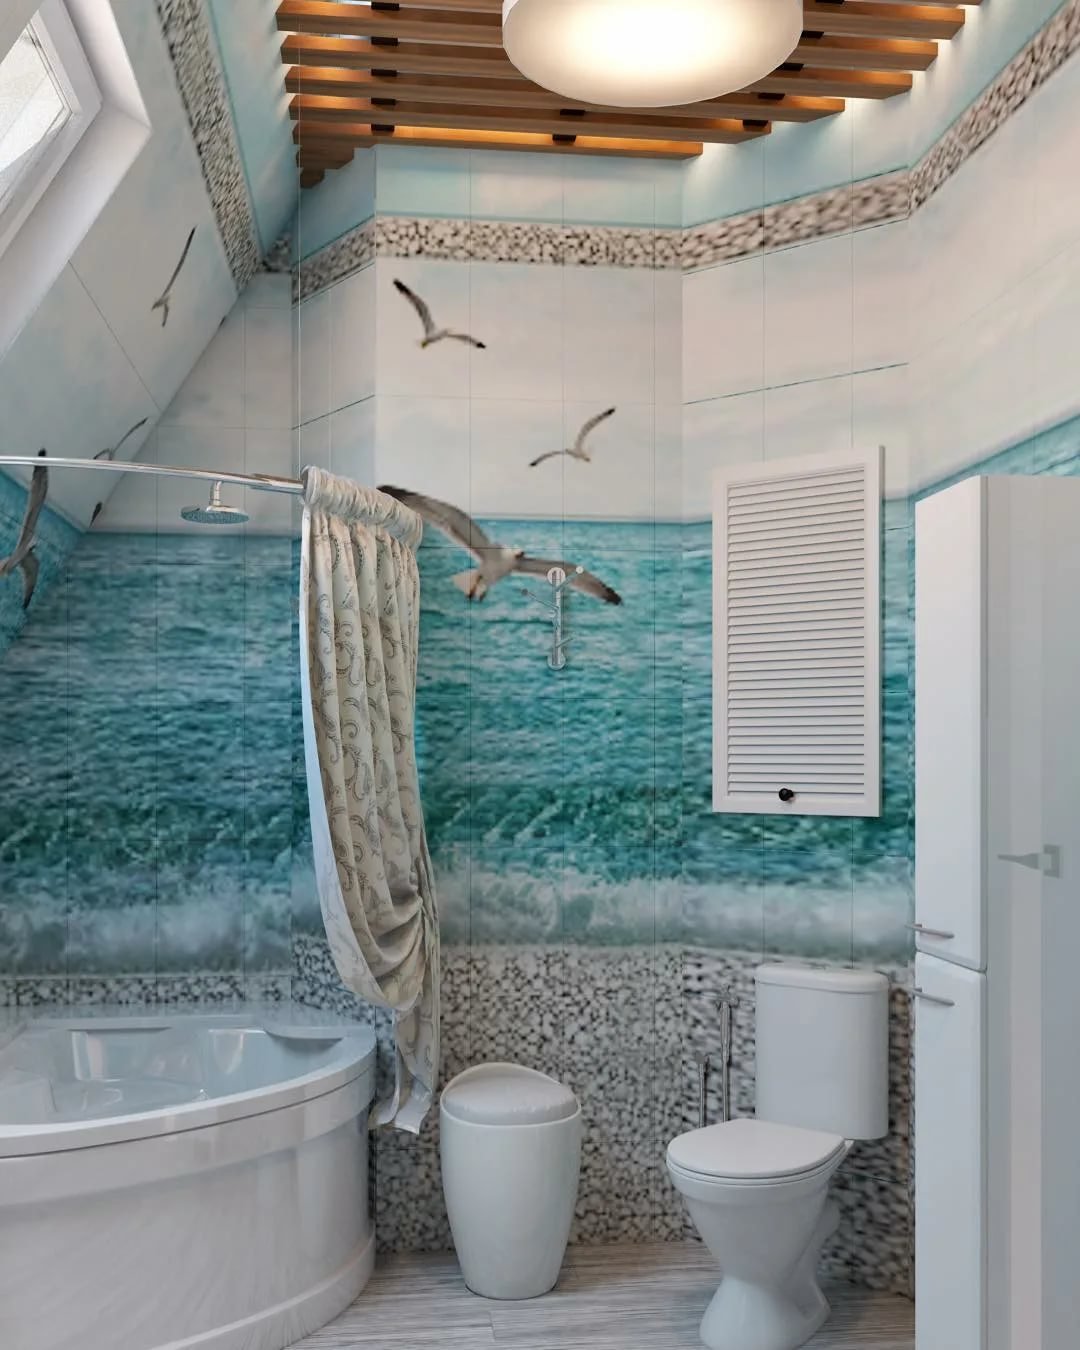 Статьи в разделе «Дизайн ванной комнаты» — Ванная в морском стиле